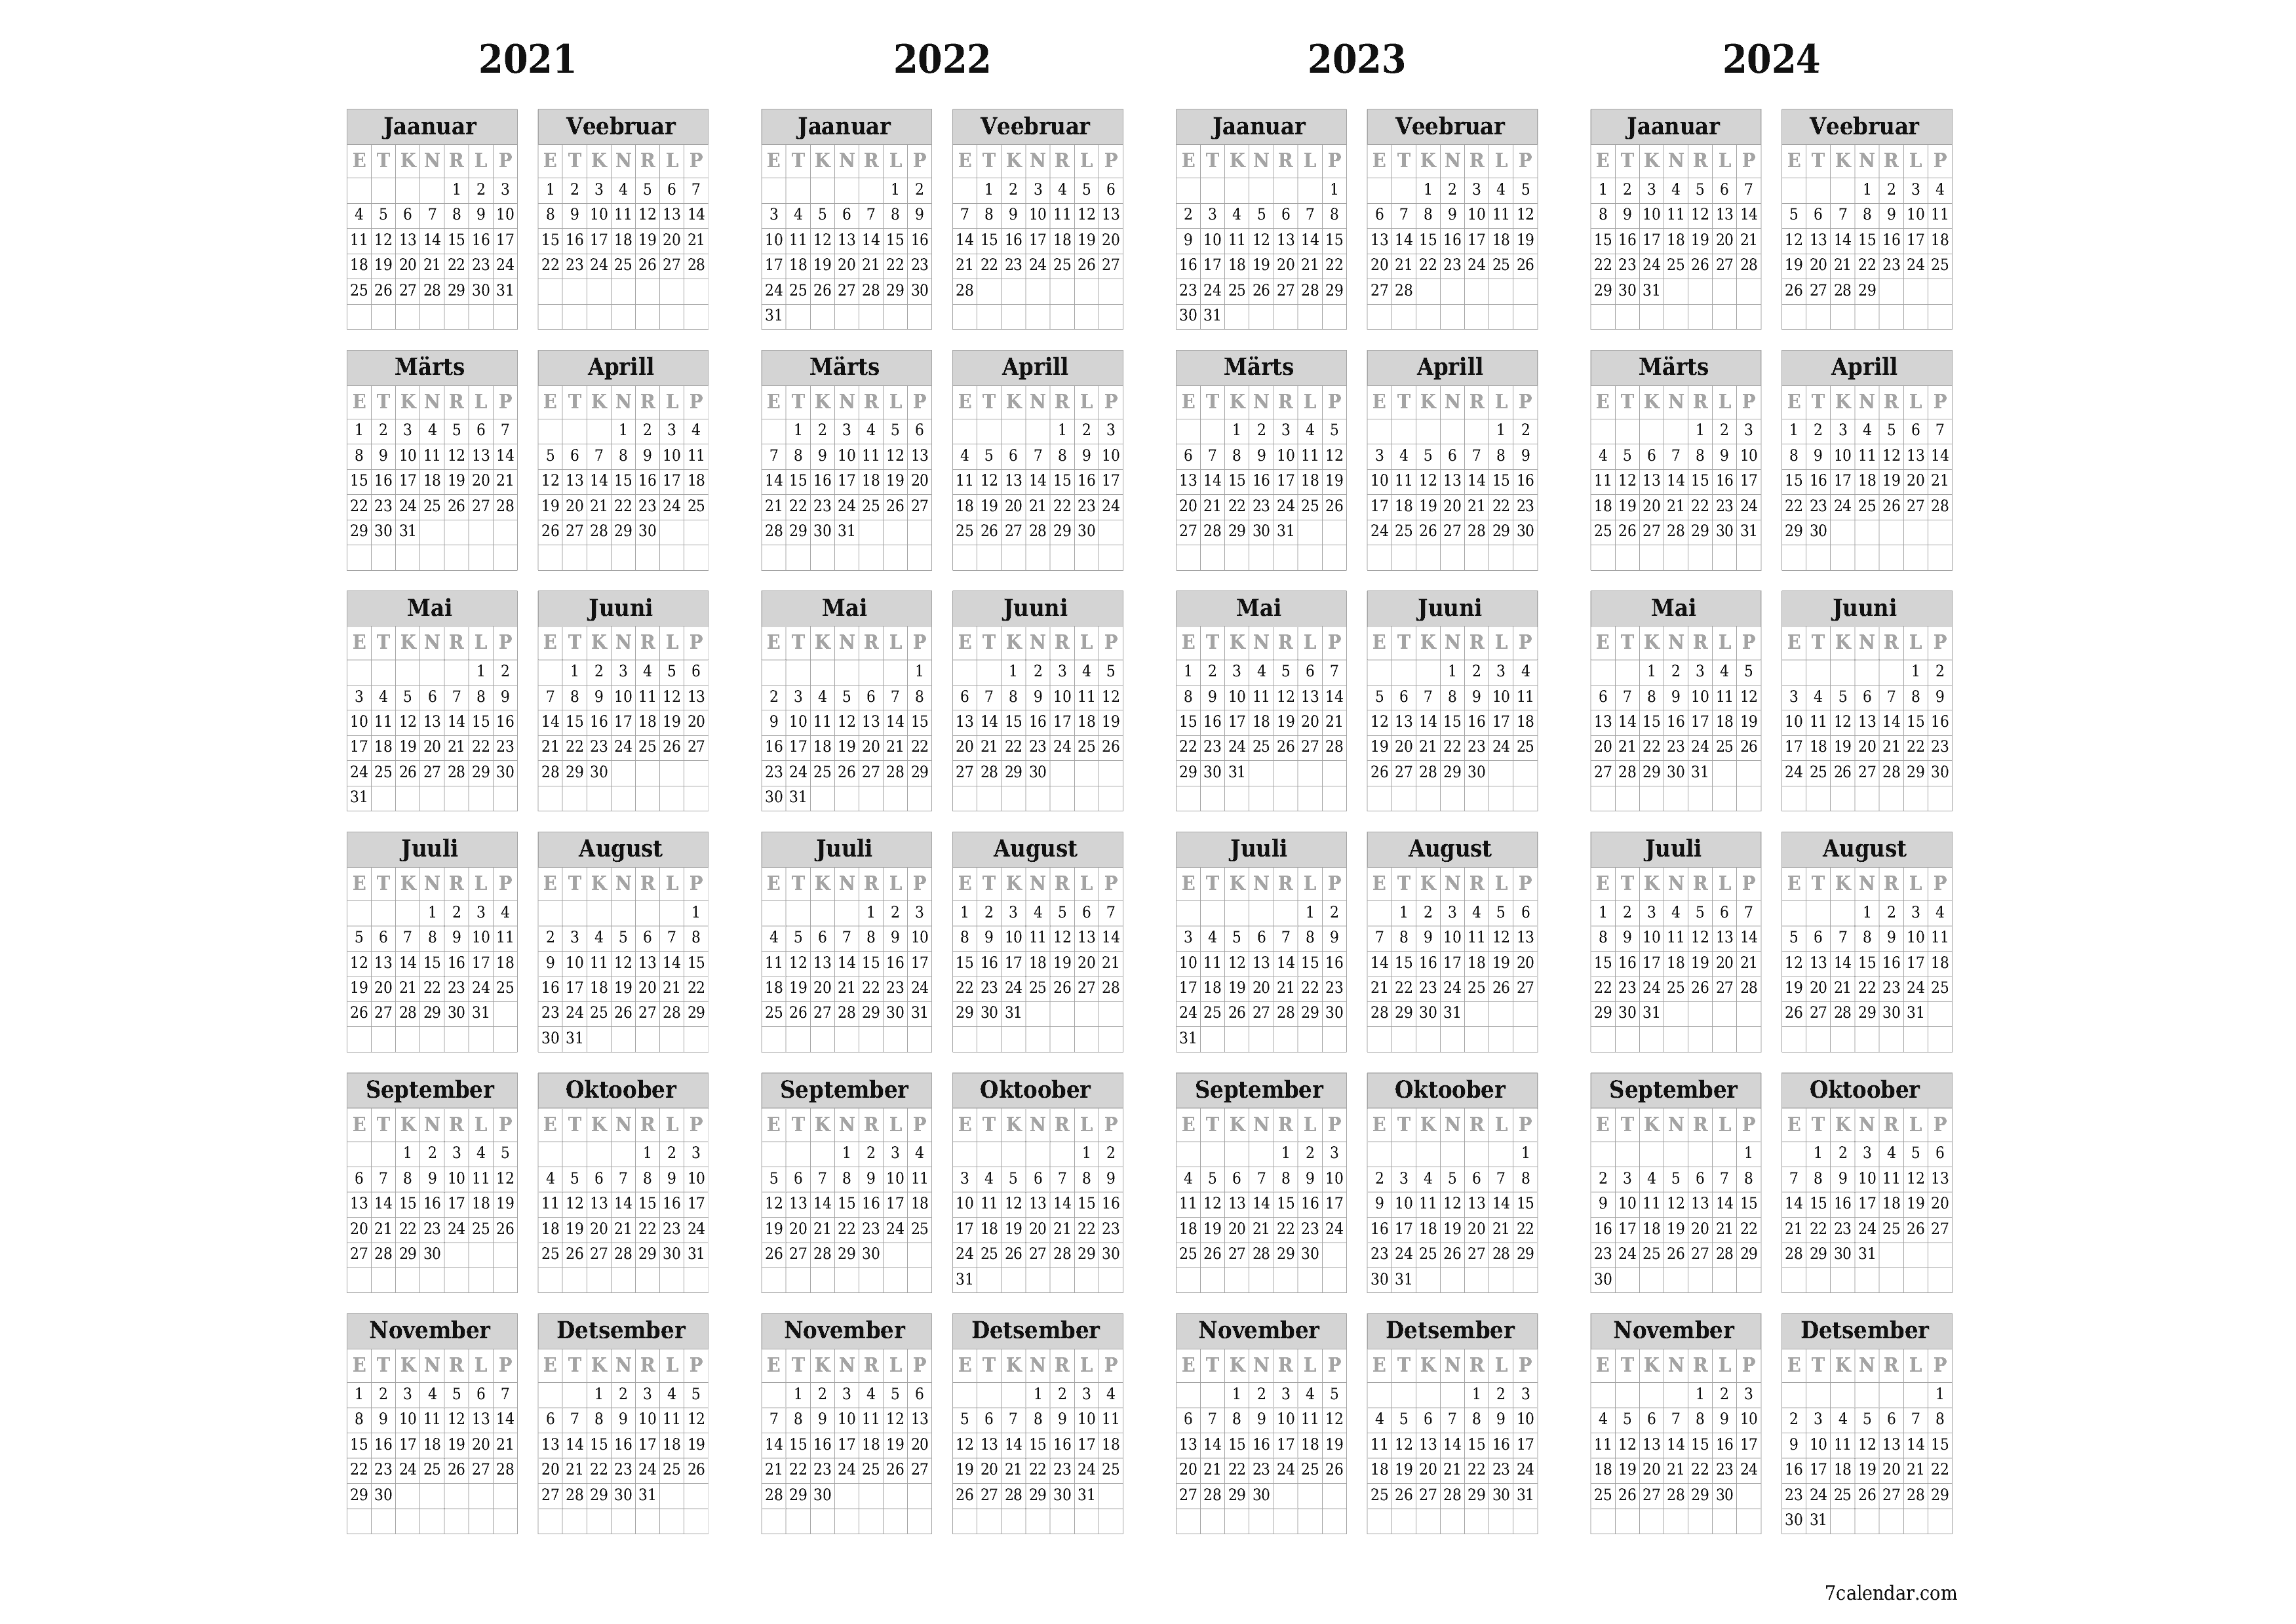 prinditav seina kalendri mall tasuta horisontaalne Iga-aastane kalender Veebruar (Veebr) 2021